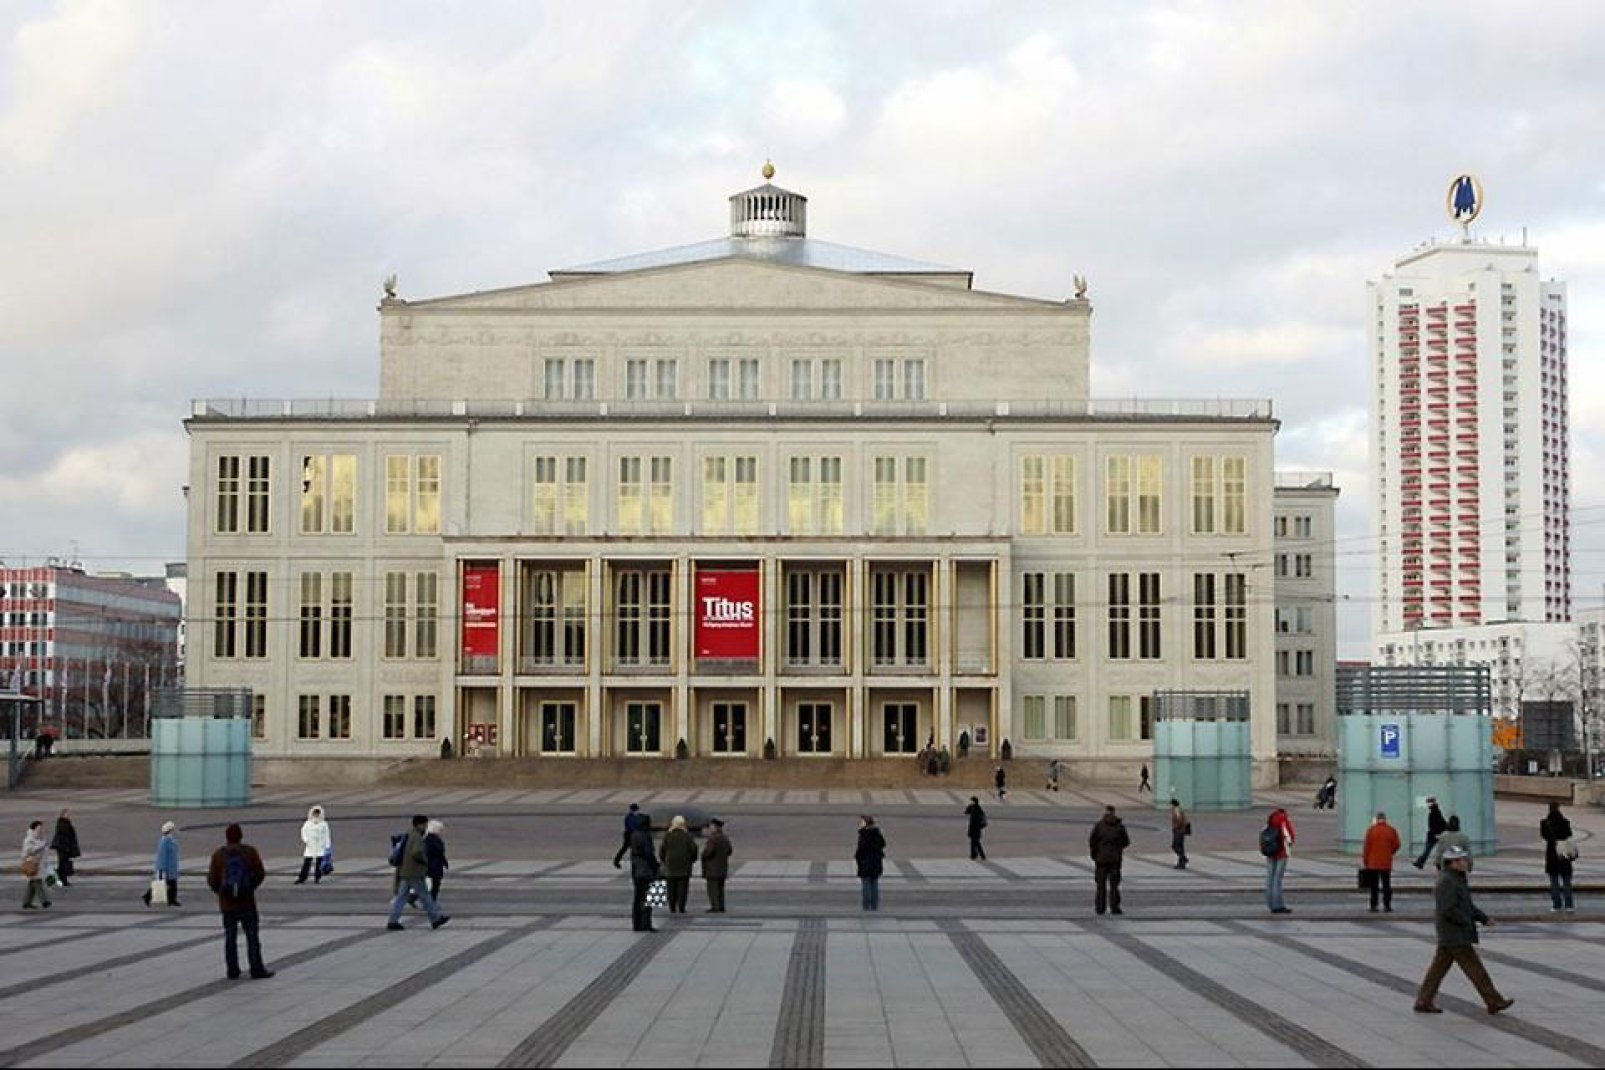 L'Opera di Leipzig ha una grande tradizione.